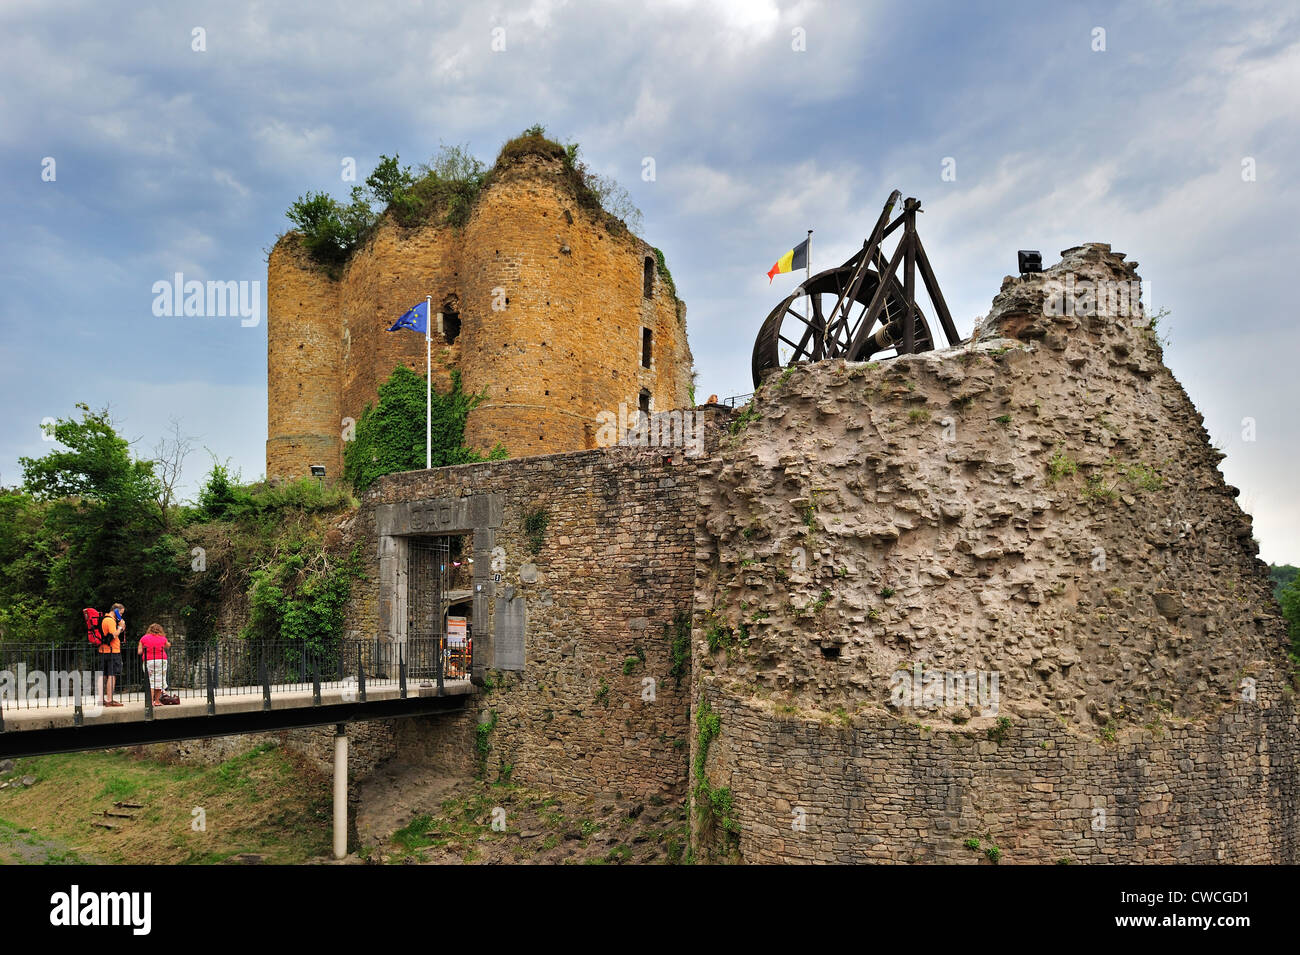 Les touristes visitant les ruines du château médiéval Château de Franchimont à Theux dans les Ardennes Belges, Liège, Belgique Banque D'Images